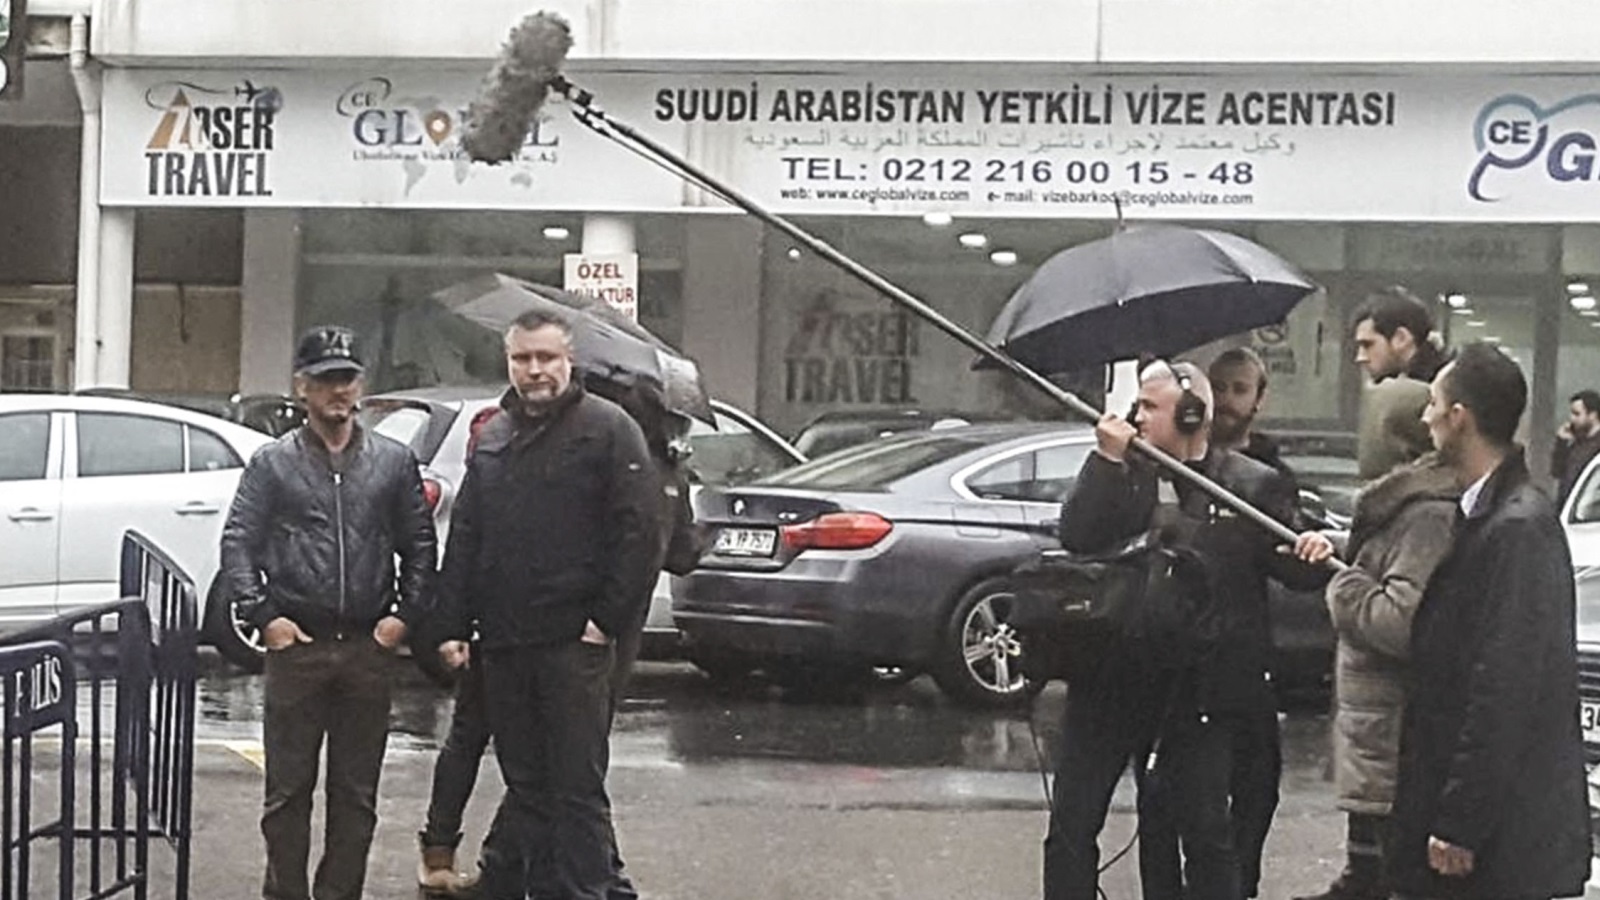 ‪الممثل شون بن والطاقم المرافق له يصورون مشاهد بإسطنبول لإنجاز فيلم عن جريمة قتل خاشقجي‬ (الأناضول)